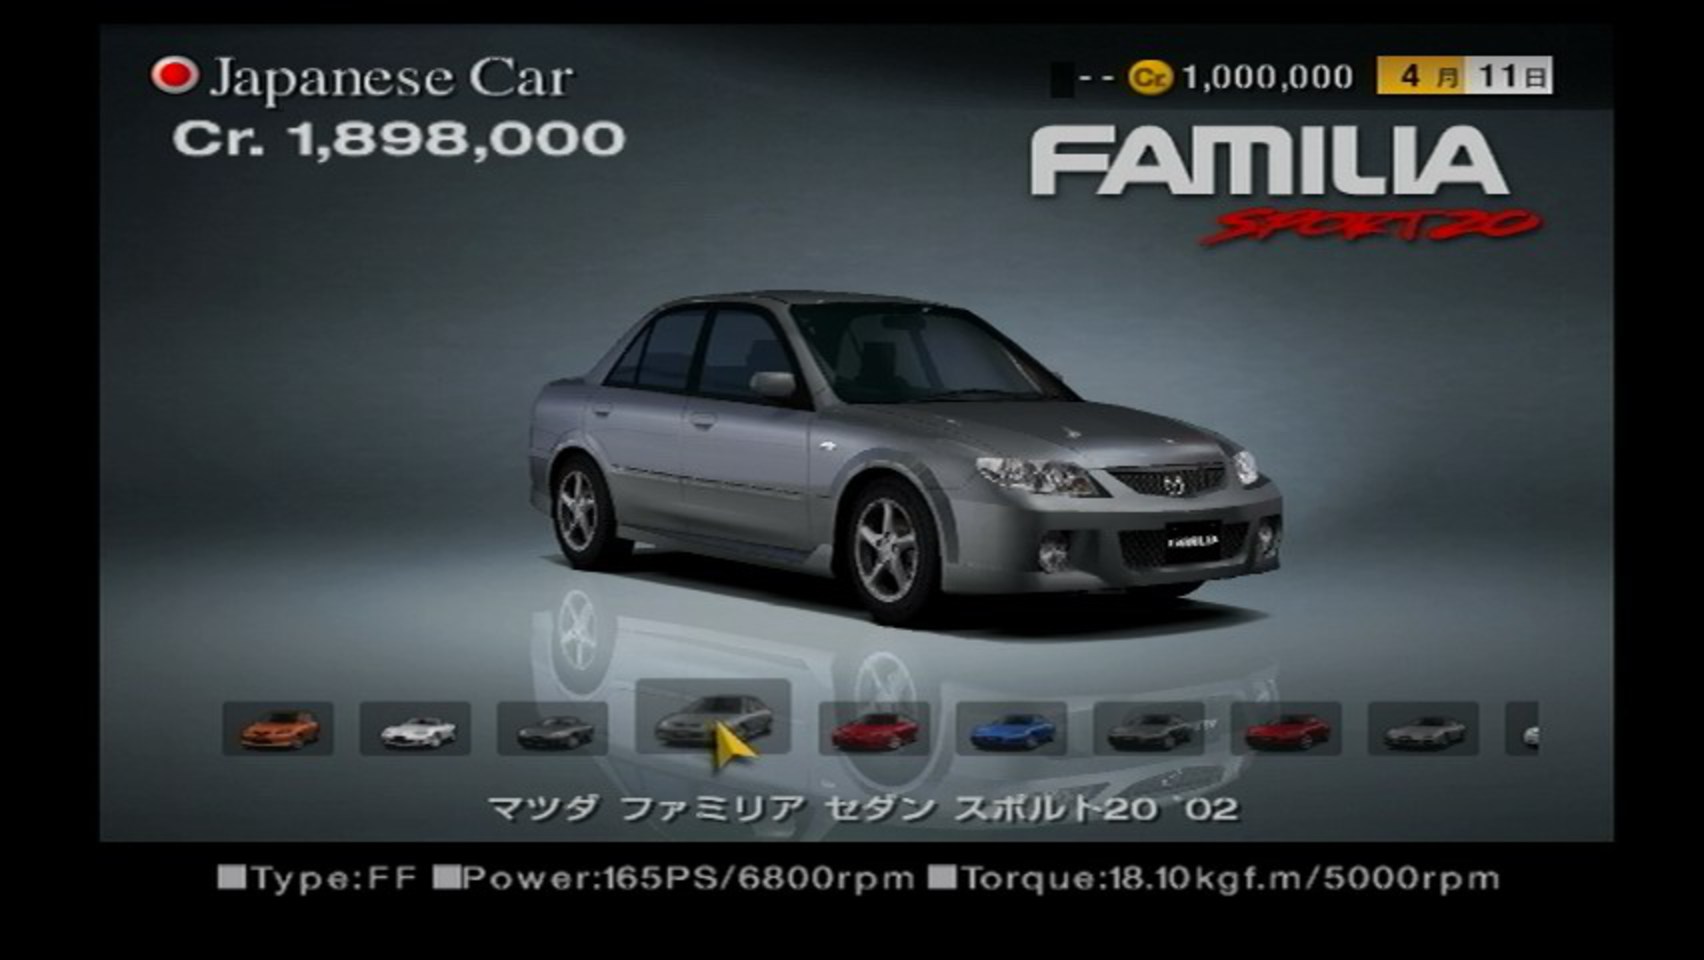 Mazda Familia Sport 20. View Download Wallpaper. 852x480. Comments